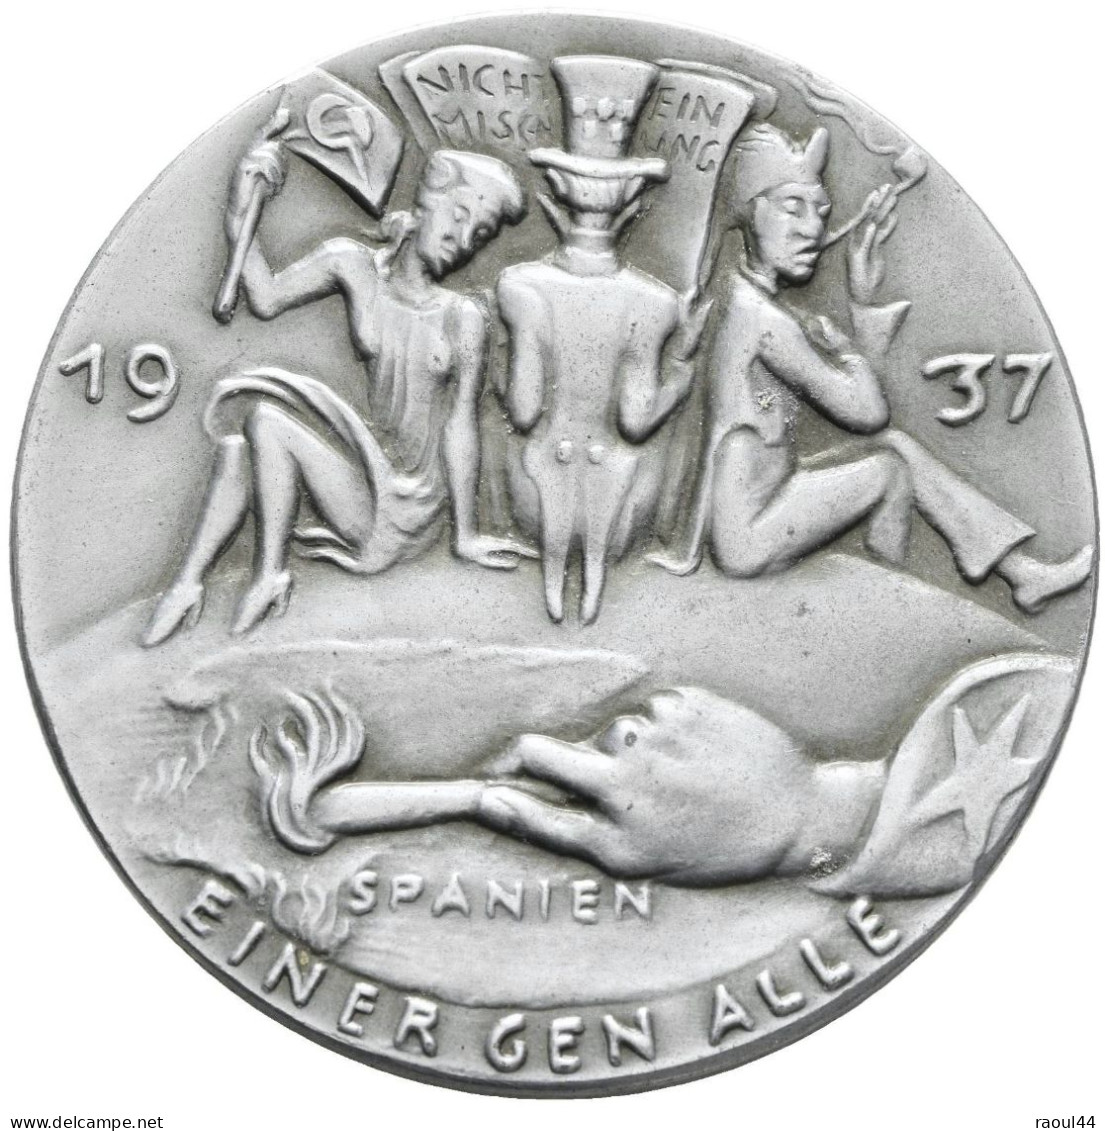 médaille 1937 non-ingérence dans la guerre civile espagnole + photos